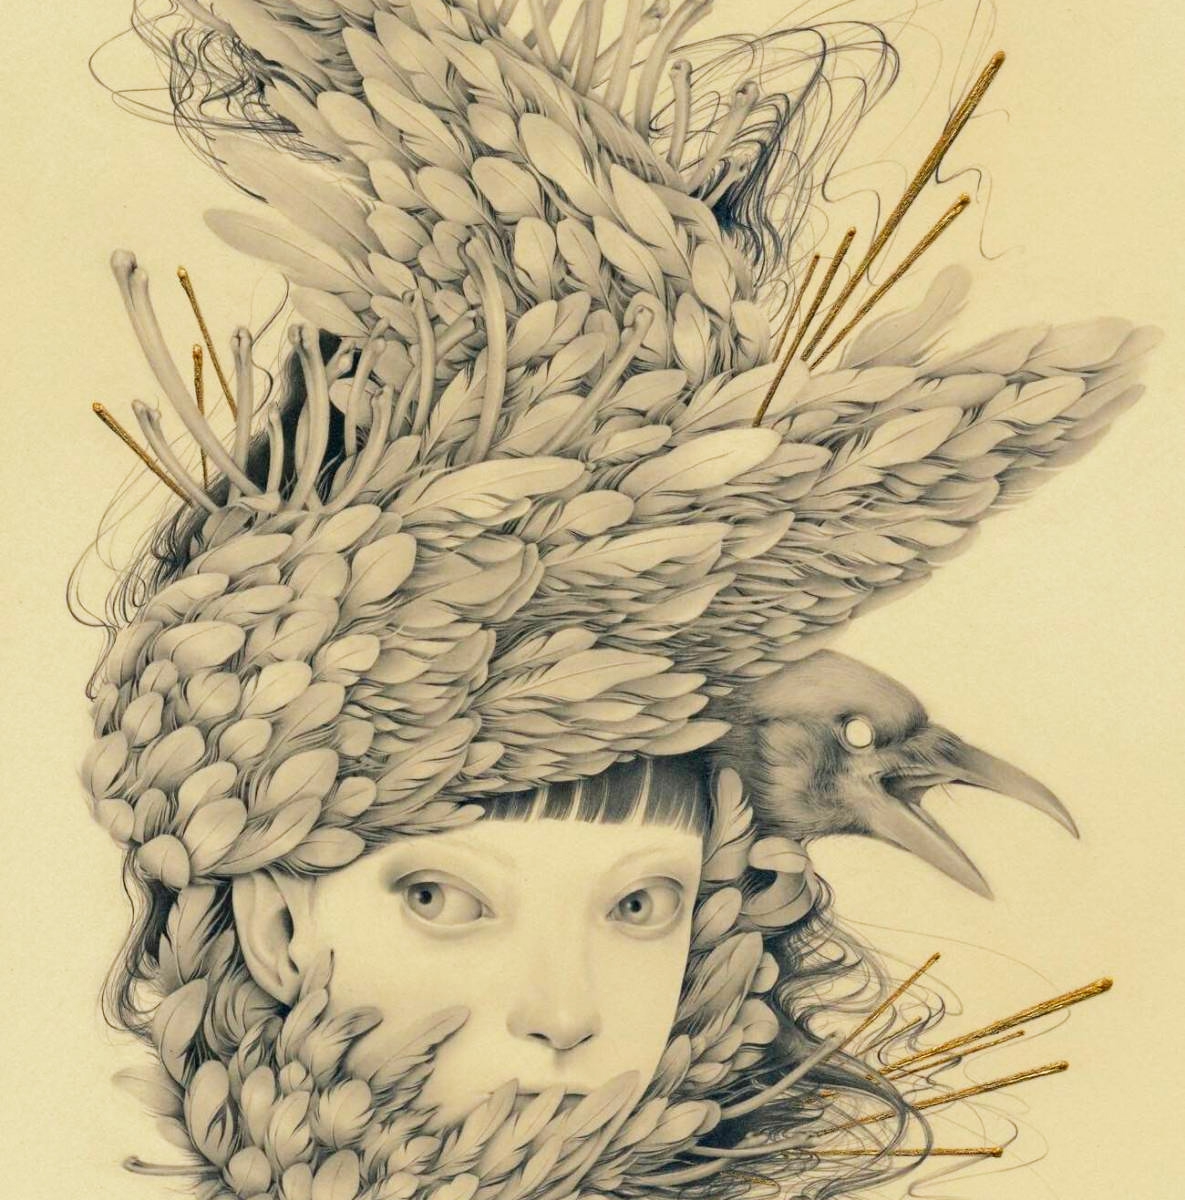 Artista japonesa combina misteriosamente retratos meticulosos de mulheres jovens com plantas e penas